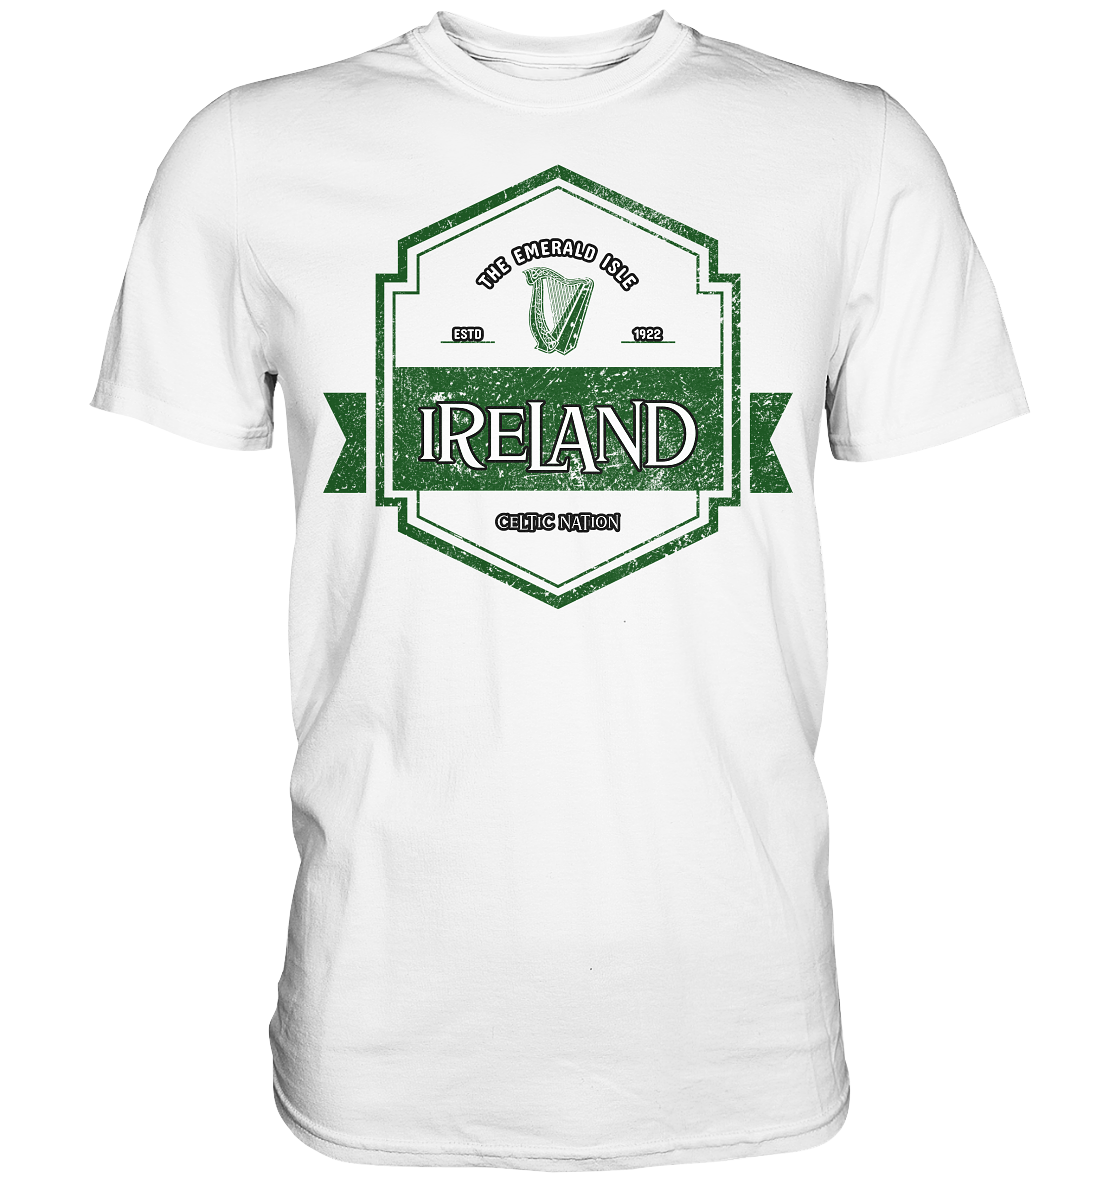 Ireland "The Emerald Isle / Celtic Nation" - Premium Shirt